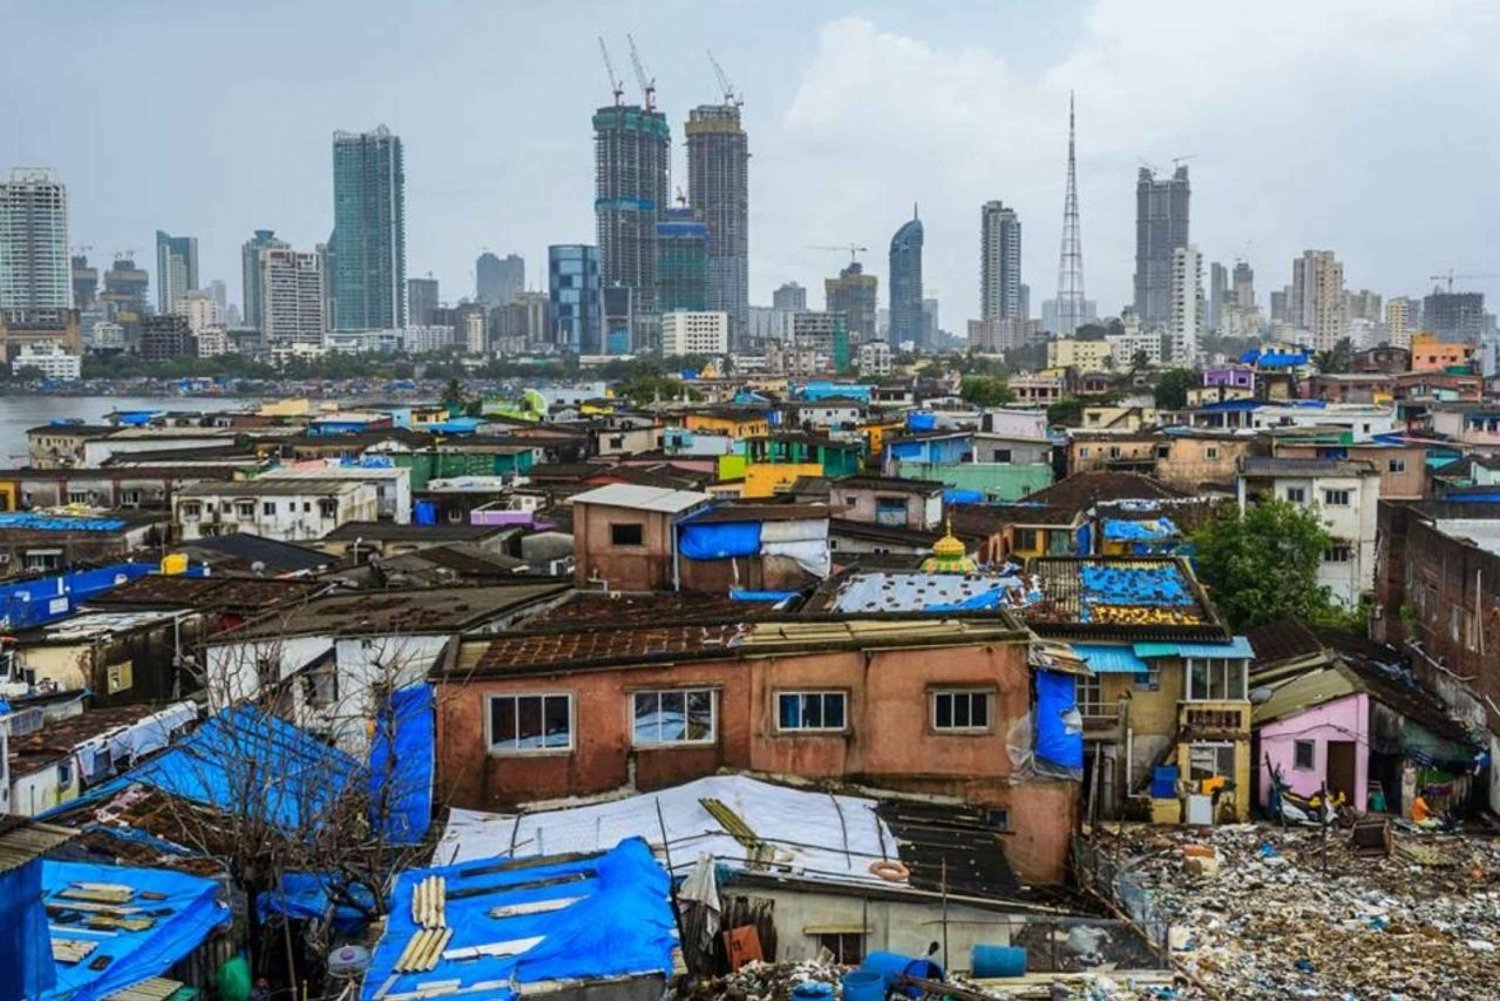 Spacer po slumsach Dharavi w Bombaju